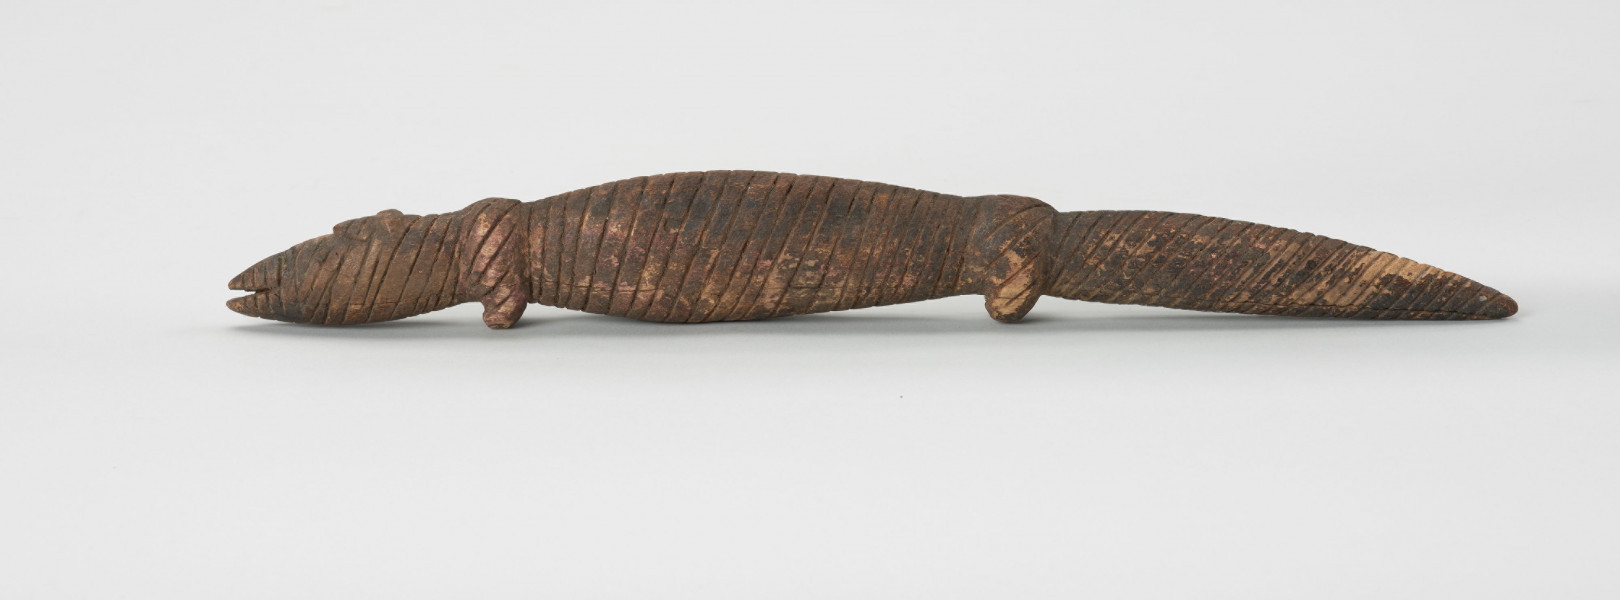 Drewniana figurka krokodyla - Ujęcie z lewej strony; Drewniana figurka krokodyla, na całej długości pokryta drobnymi nacięciami. Zaznaczona długa głowa, długi tułów oraz gruby ogon, zakończony spiczaście i spuszczony do dołu. Zaznaczone proste, krótkie kończyny przednie i tylne.